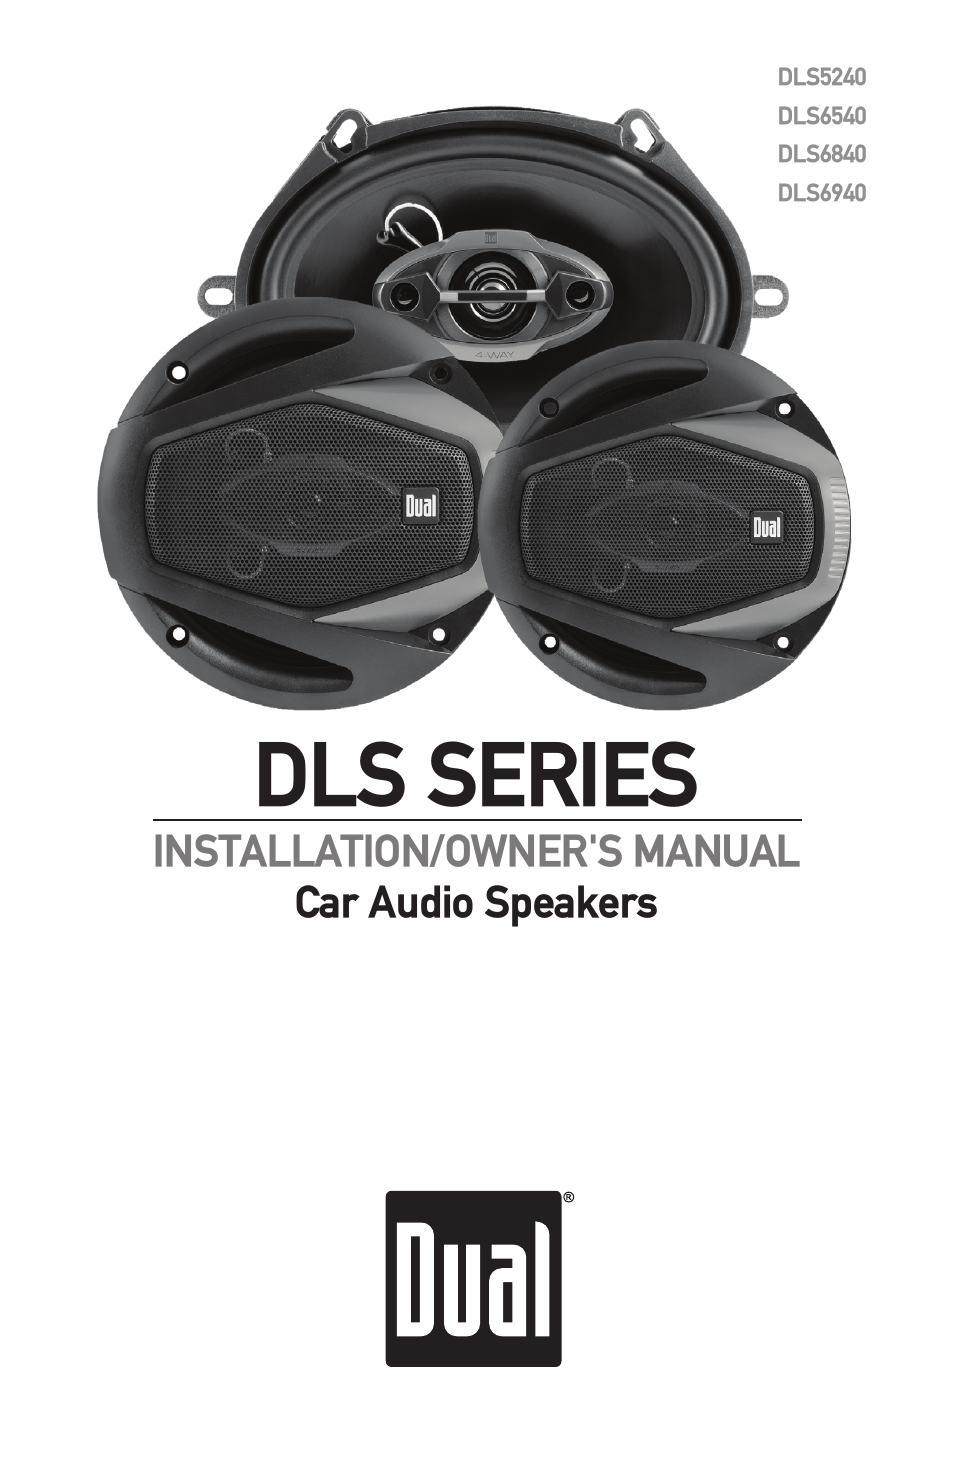 DLS Series new